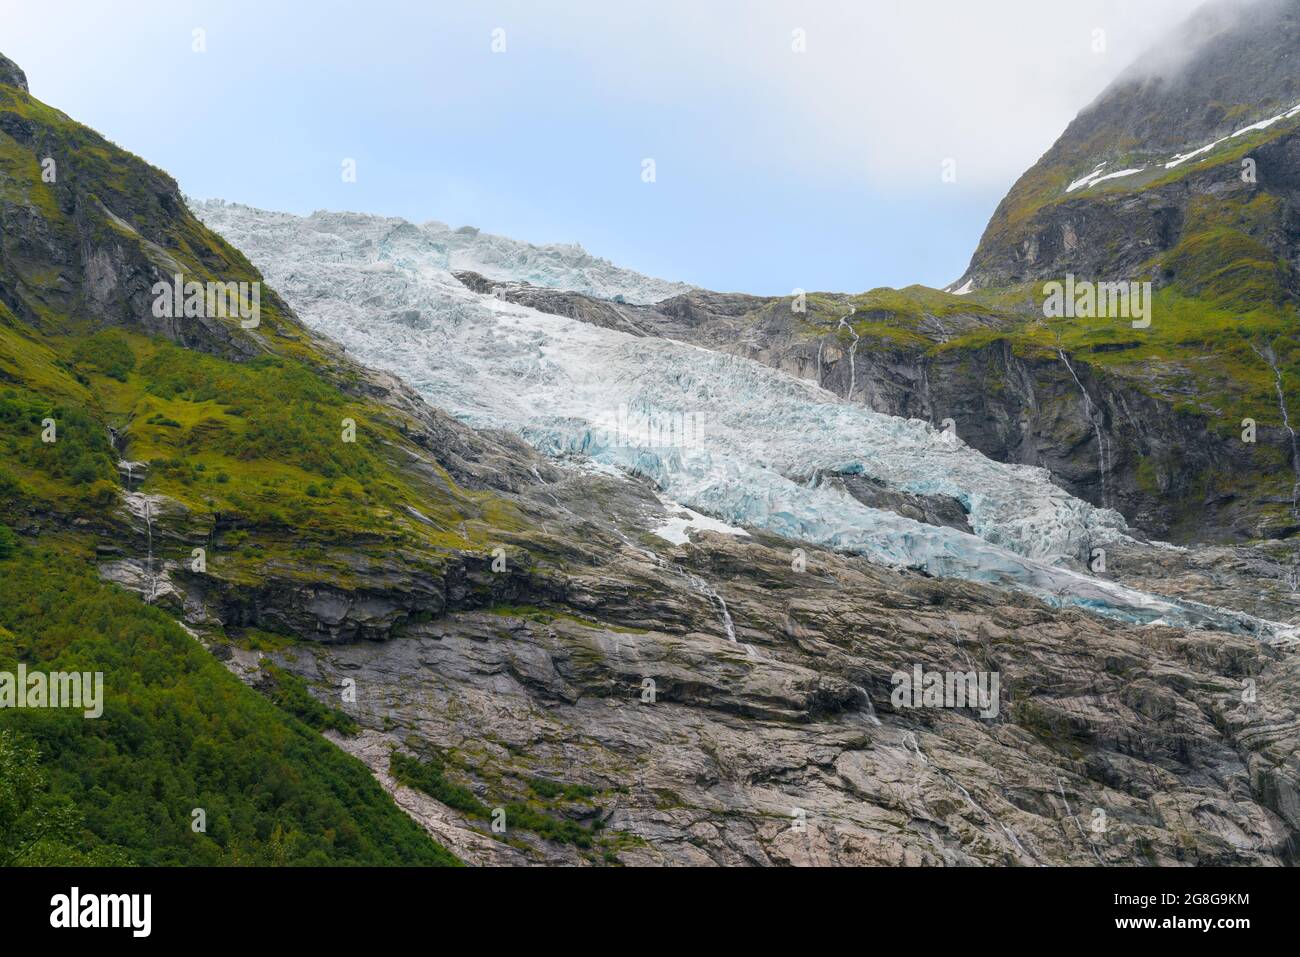 Dettaglio del Ghiacciaio Boyabreen che scorre lungo la montagna rocciosa. Paesaggio norvegese in un giorno d'estate. Foto Stock